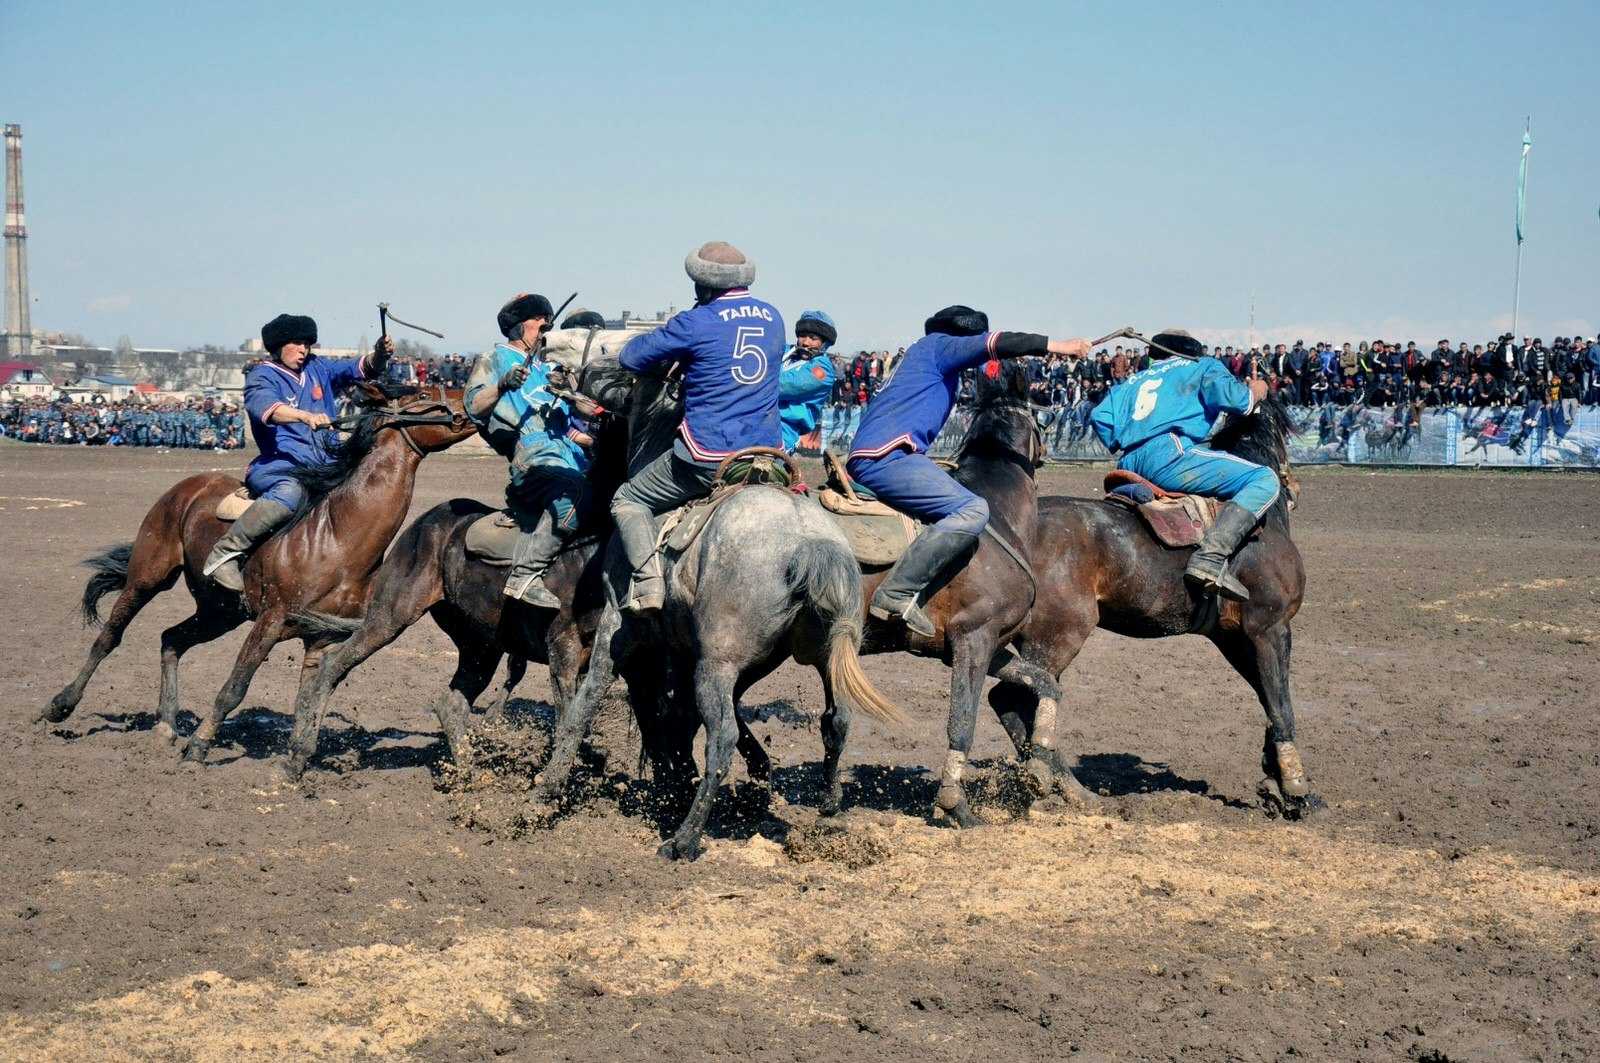 Kok-boru is the traditional sport of Nowruz © Anadolu Agency / Getty Images